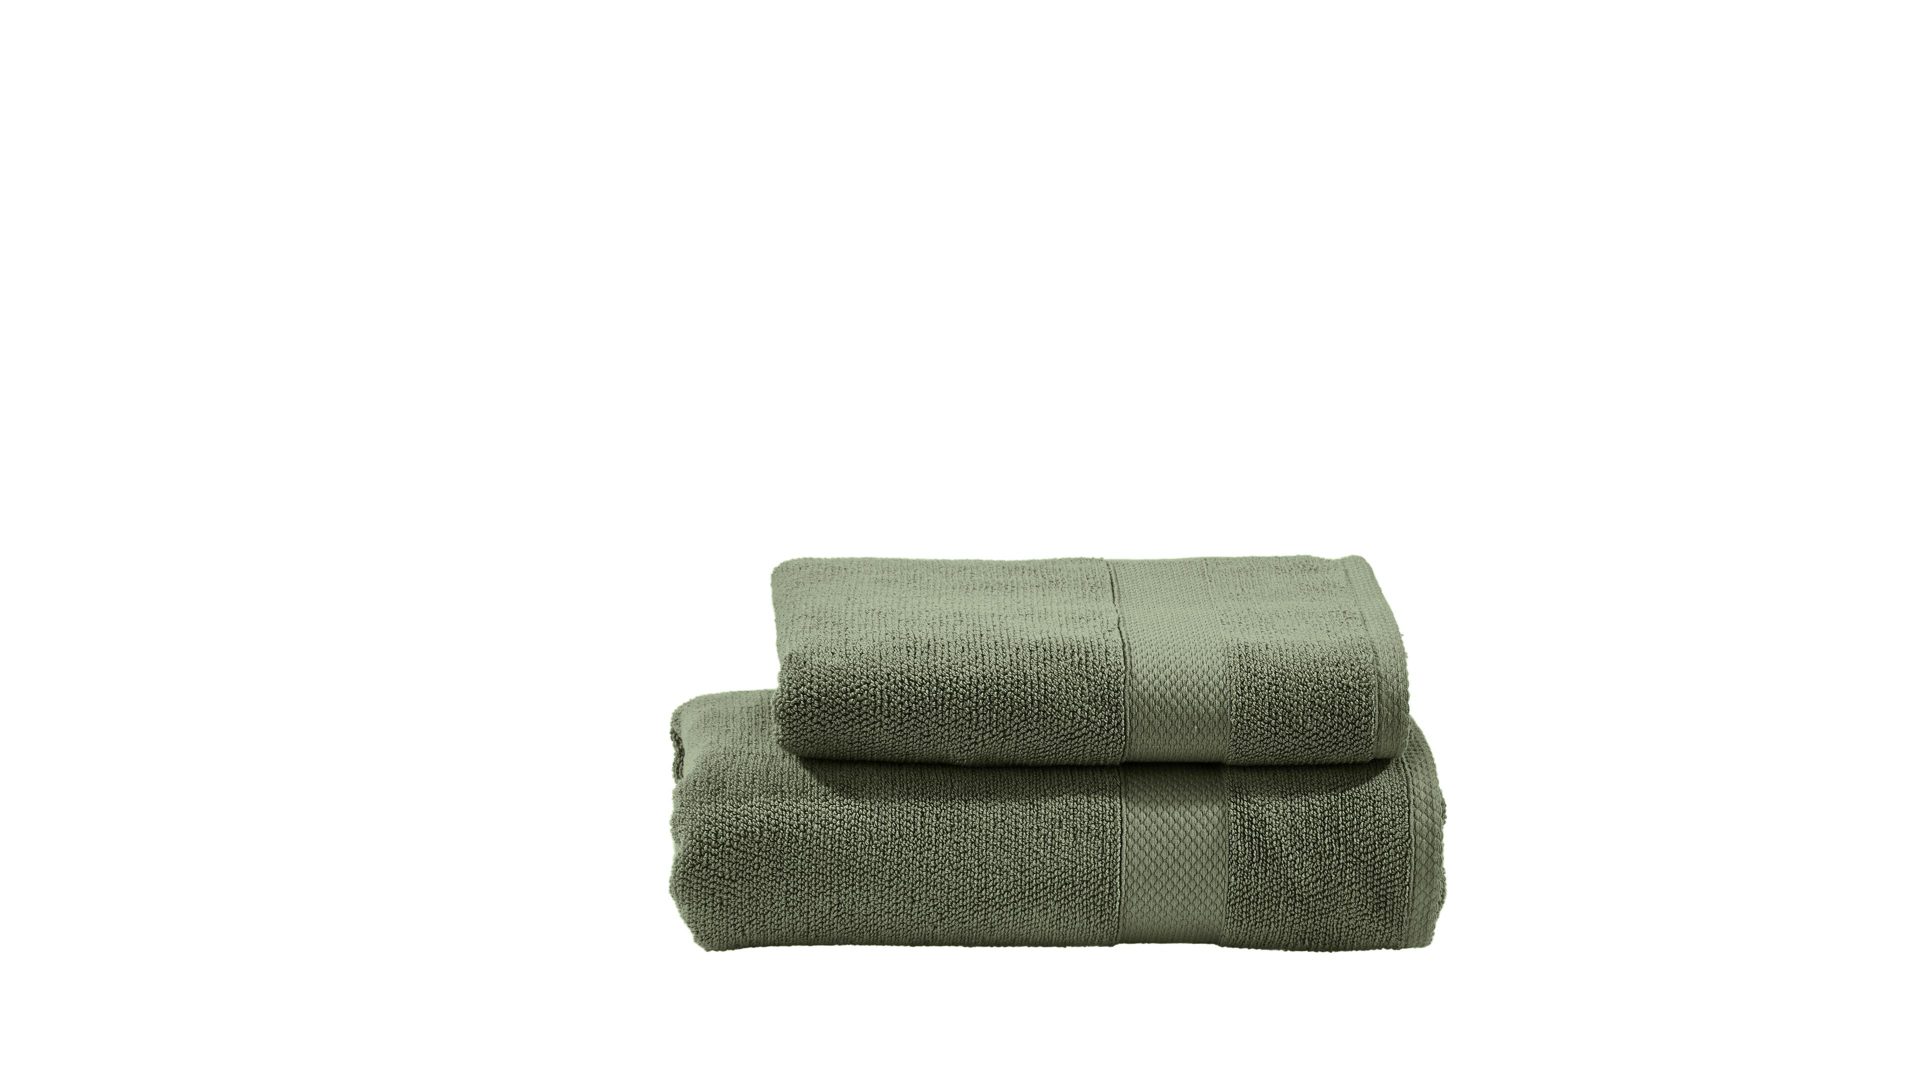 Handtuch-Set Done by karabel home company aus Stoff in Grün done Handtuch-Set Deluxe für Ihre Heimtextilien khakifarbene Baumwolle – zweiteilig